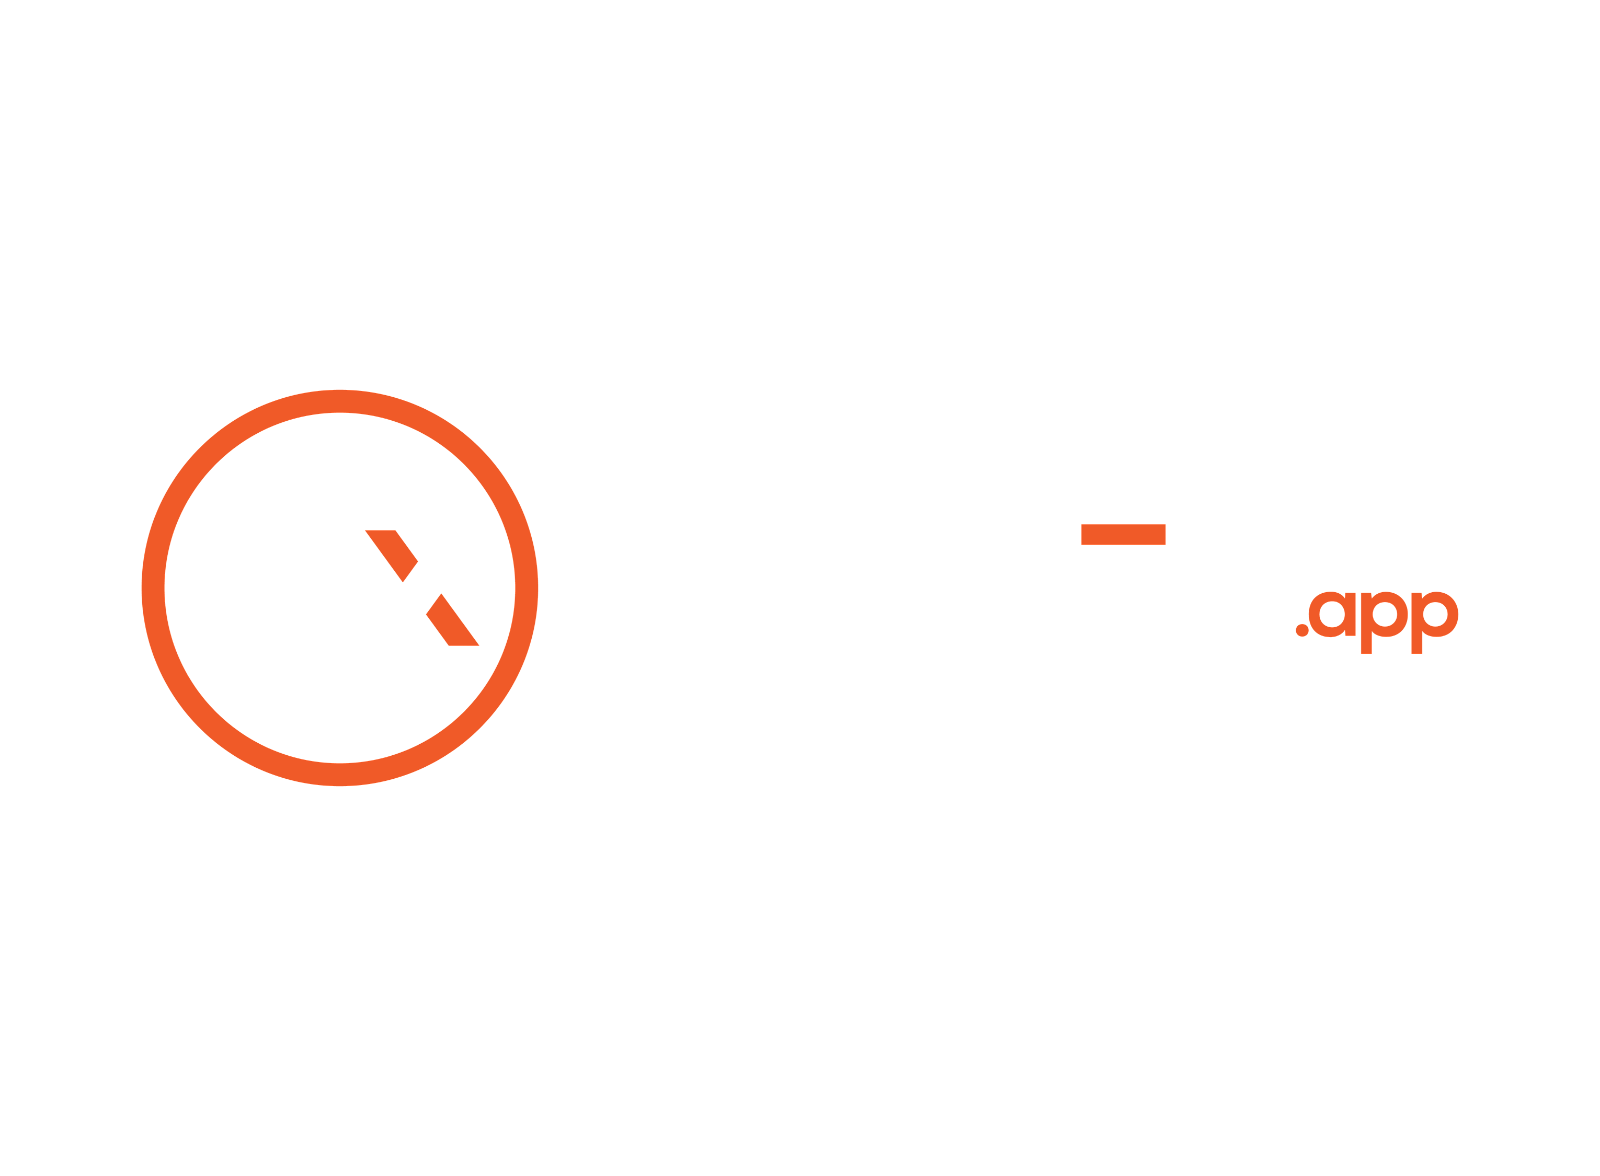 CRODEX